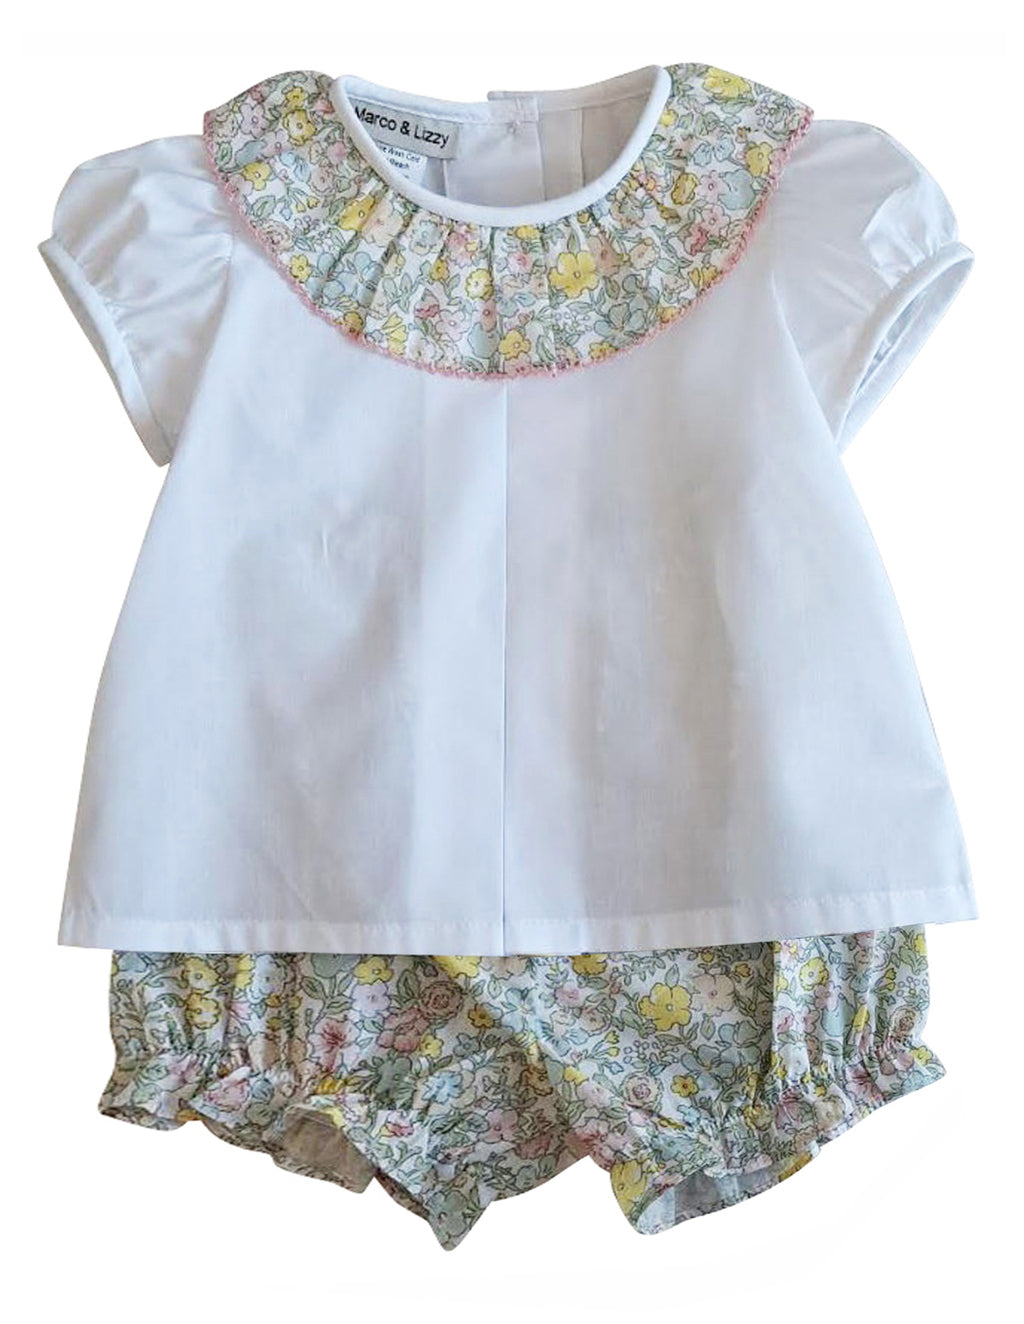 Girl's Spring Again Baby Diaper set - Little Threads Inc. Children's Clothing